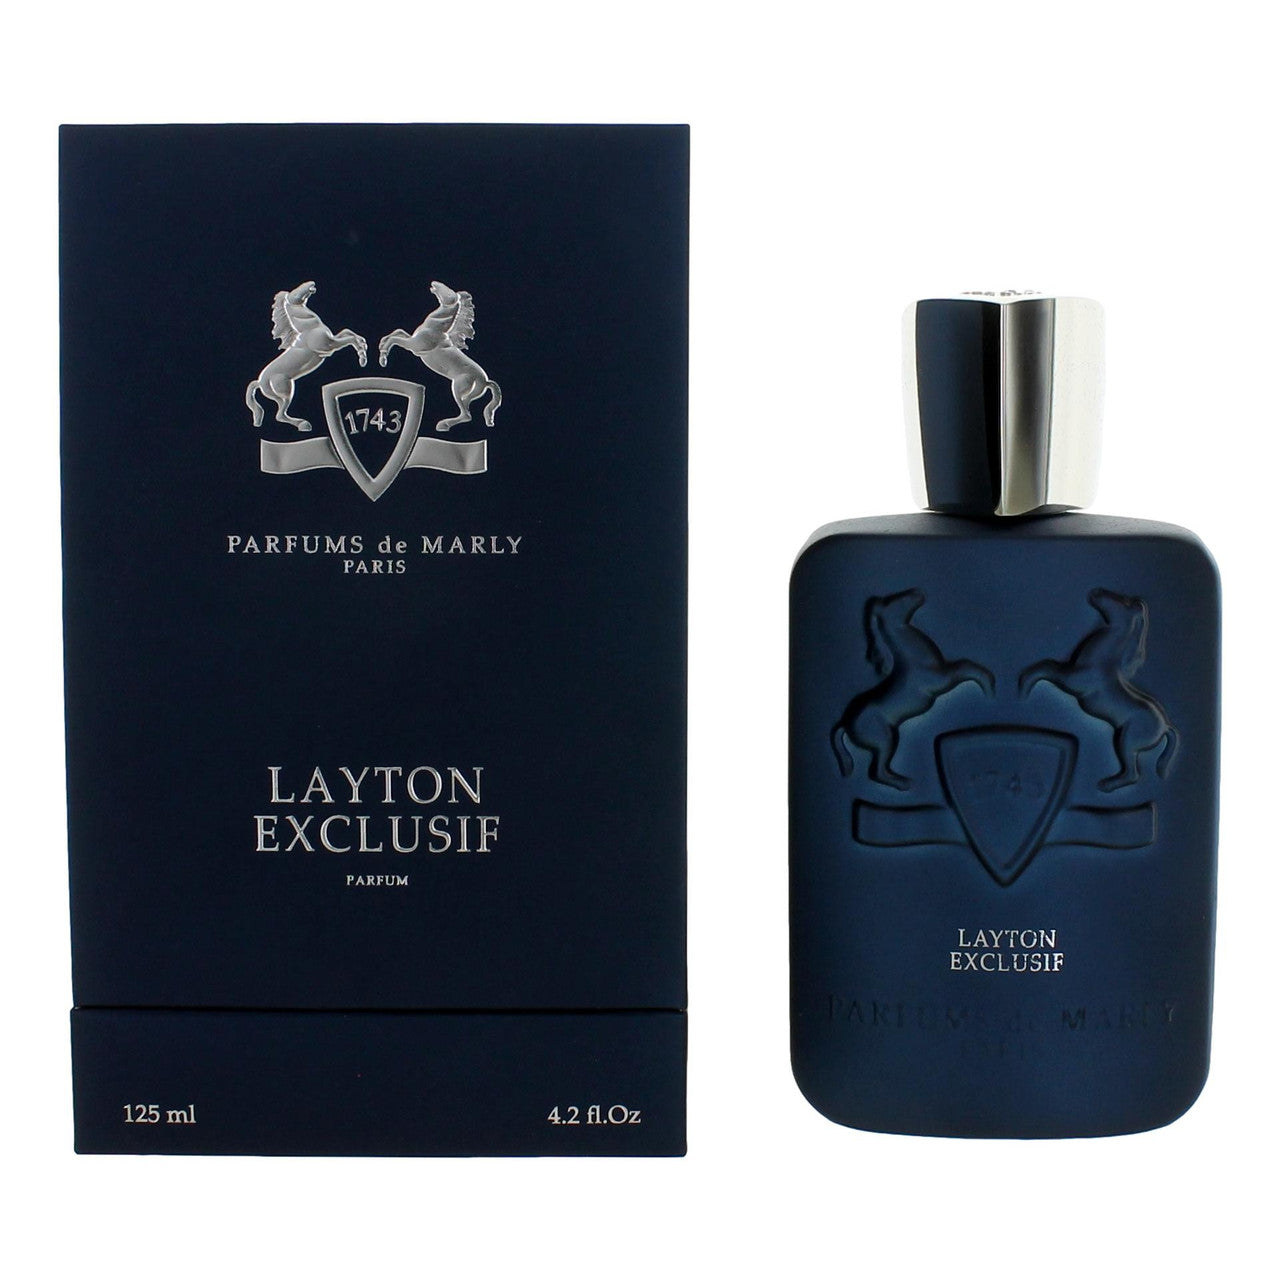 Parfums de Marly Layton Exclusif 4.2 Oz